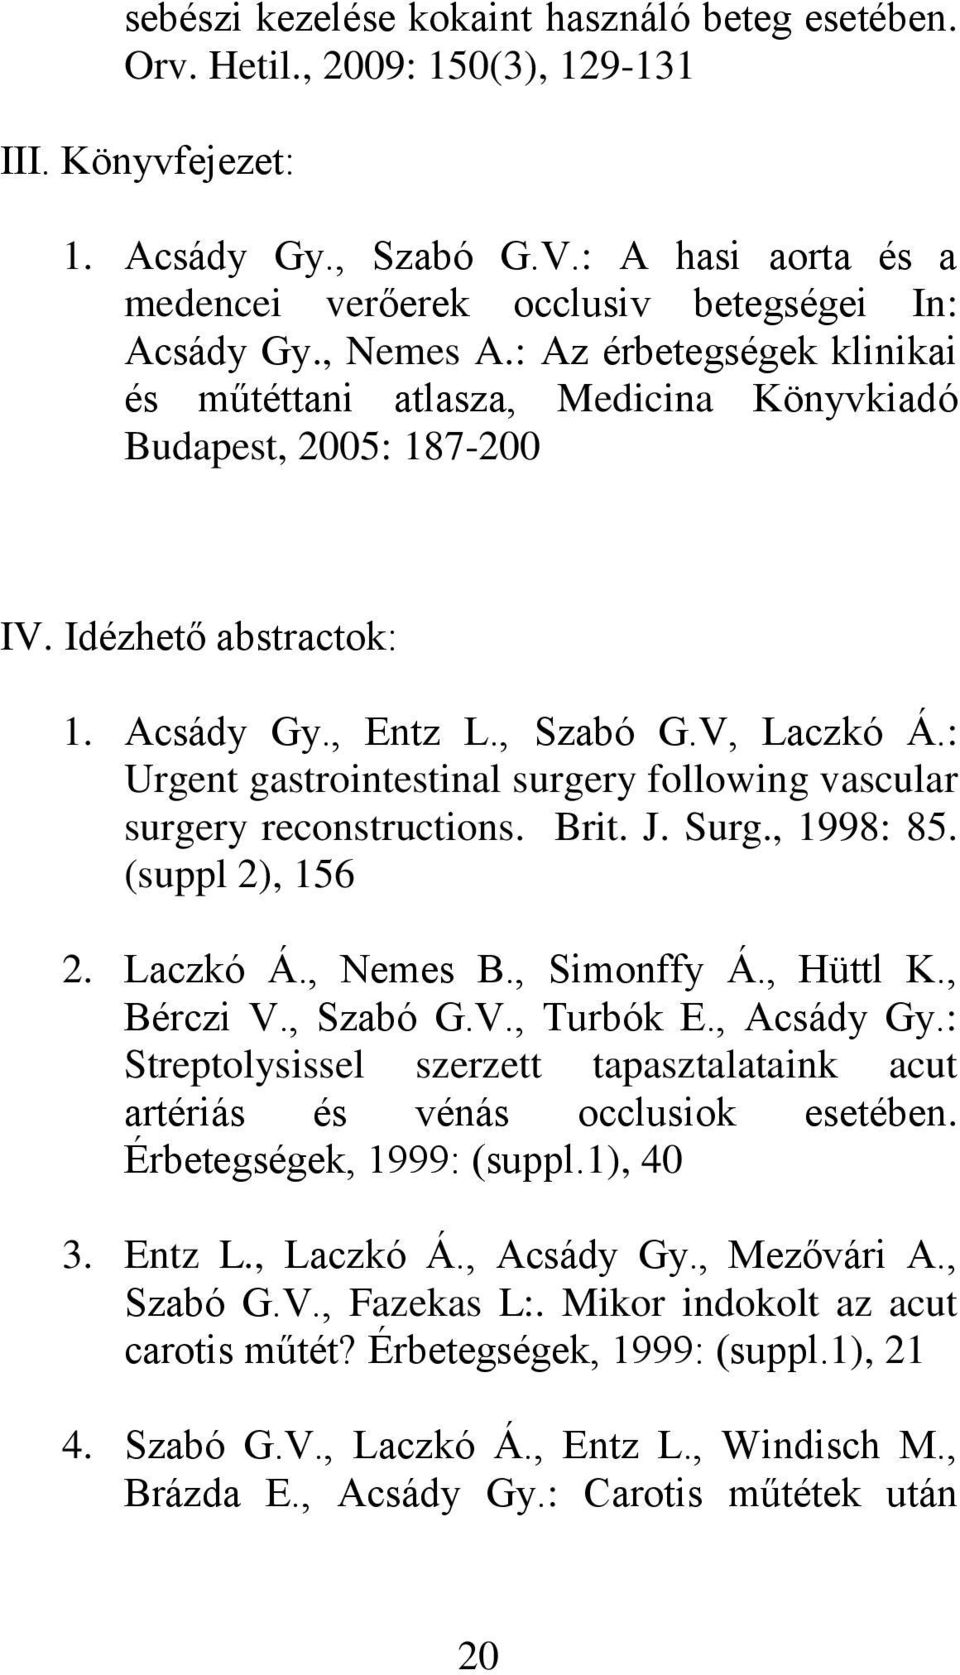 Idézhető abstractok: 1. Acsády Gy., Entz L., Szabó G.V, Laczkó Á.: Urgent gastrointestinal surgery following vascular surgery reconstructions. Brit. J. Surg., 1998: 85. (suppl 2), 156 2. Laczkó Á., Nemes B.